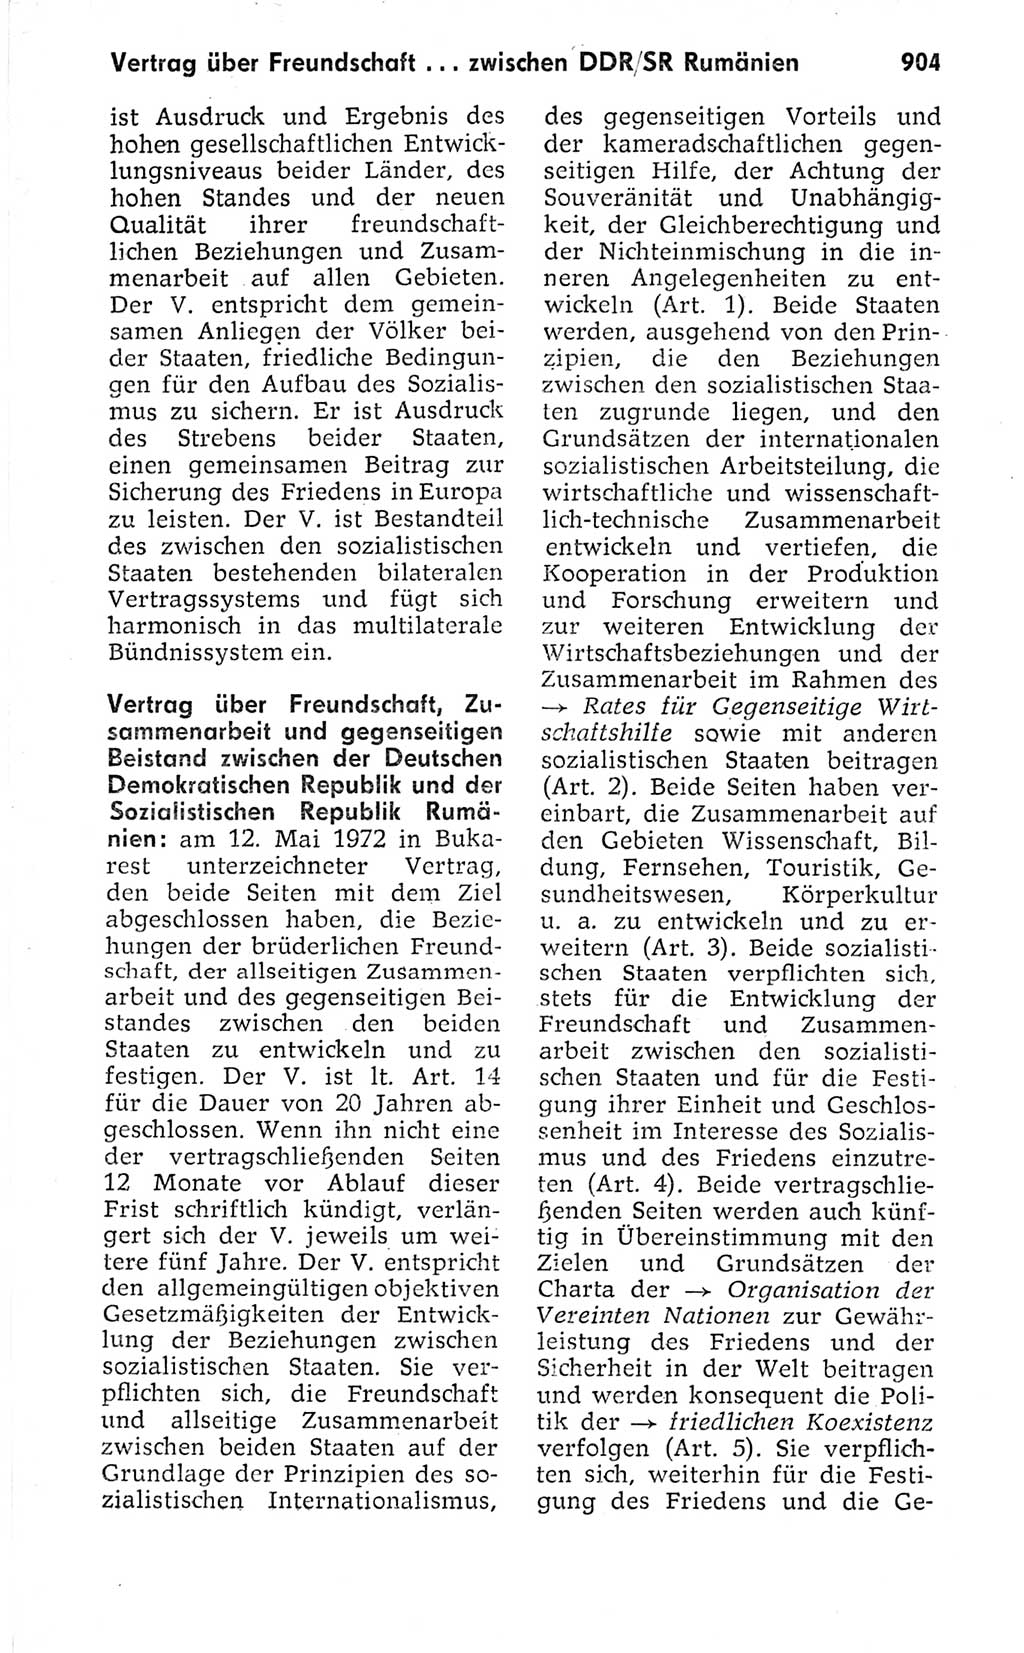 Kleines politisches Wörterbuch [Deutsche Demokratische Republik (DDR)] 1973, Seite 904 (Kl. pol. Wb. DDR 1973, S. 904)